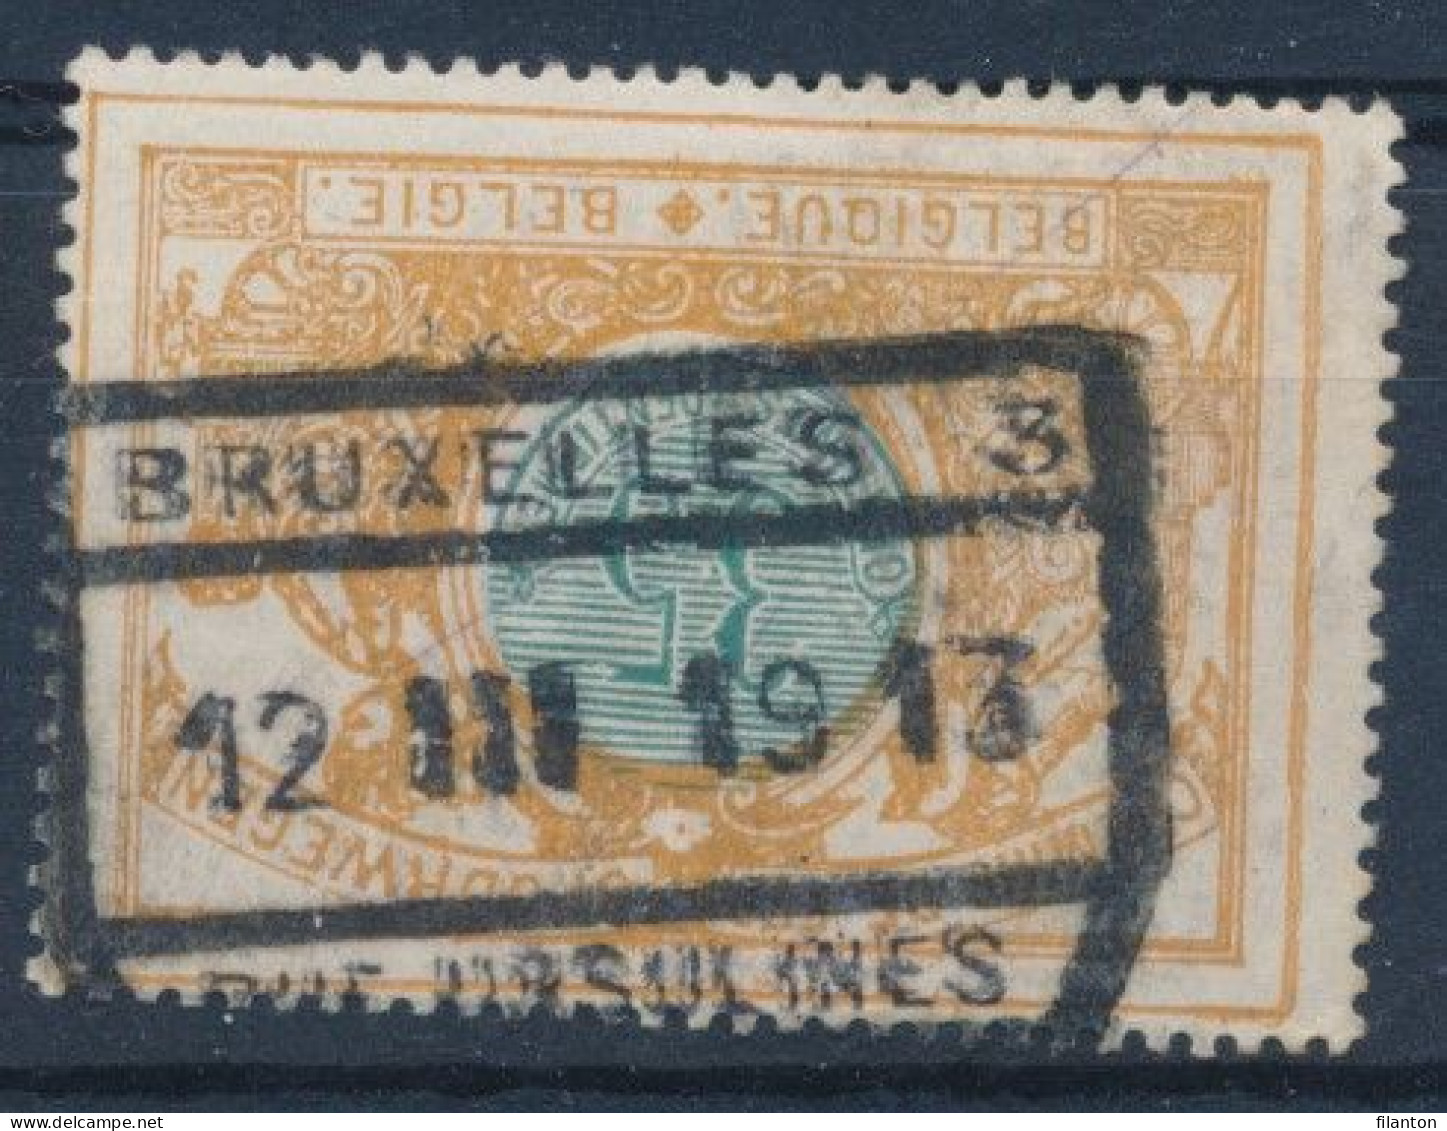 TR  33 - "BRUXELLES 3 - RUE URSULINES" - (ref. 37.554) - Used